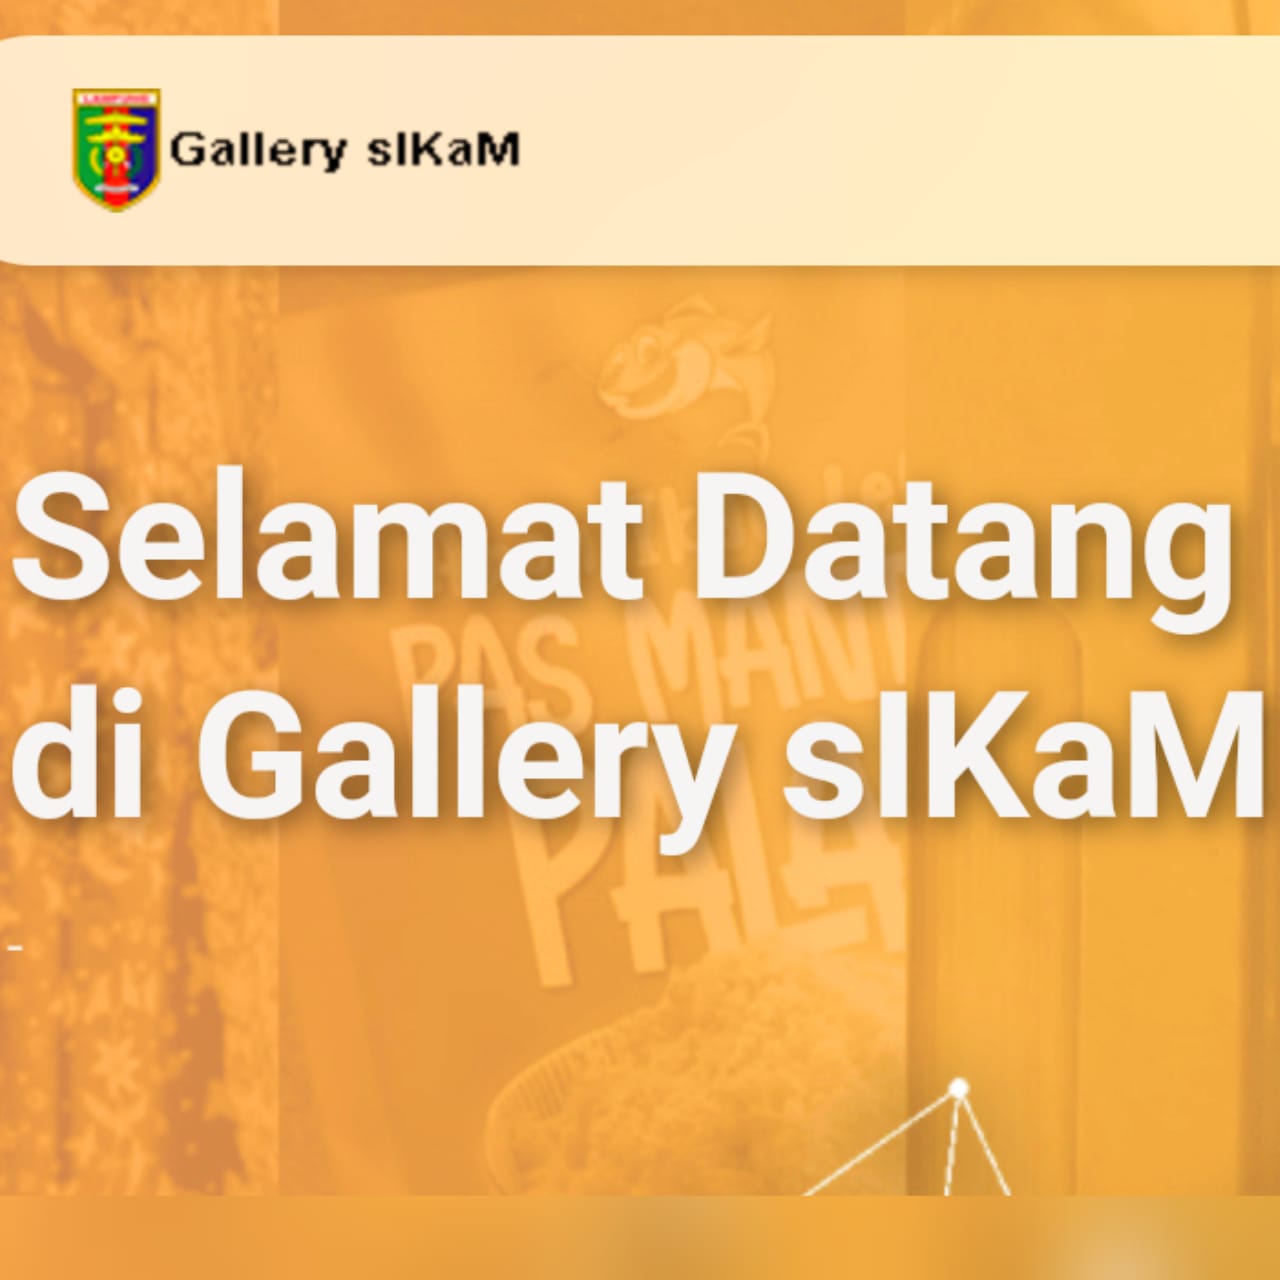 Dukung Gallery sIKaM Disperindag Lampung, Apindo: Perkuat Digitalisasi UMKM-IKM